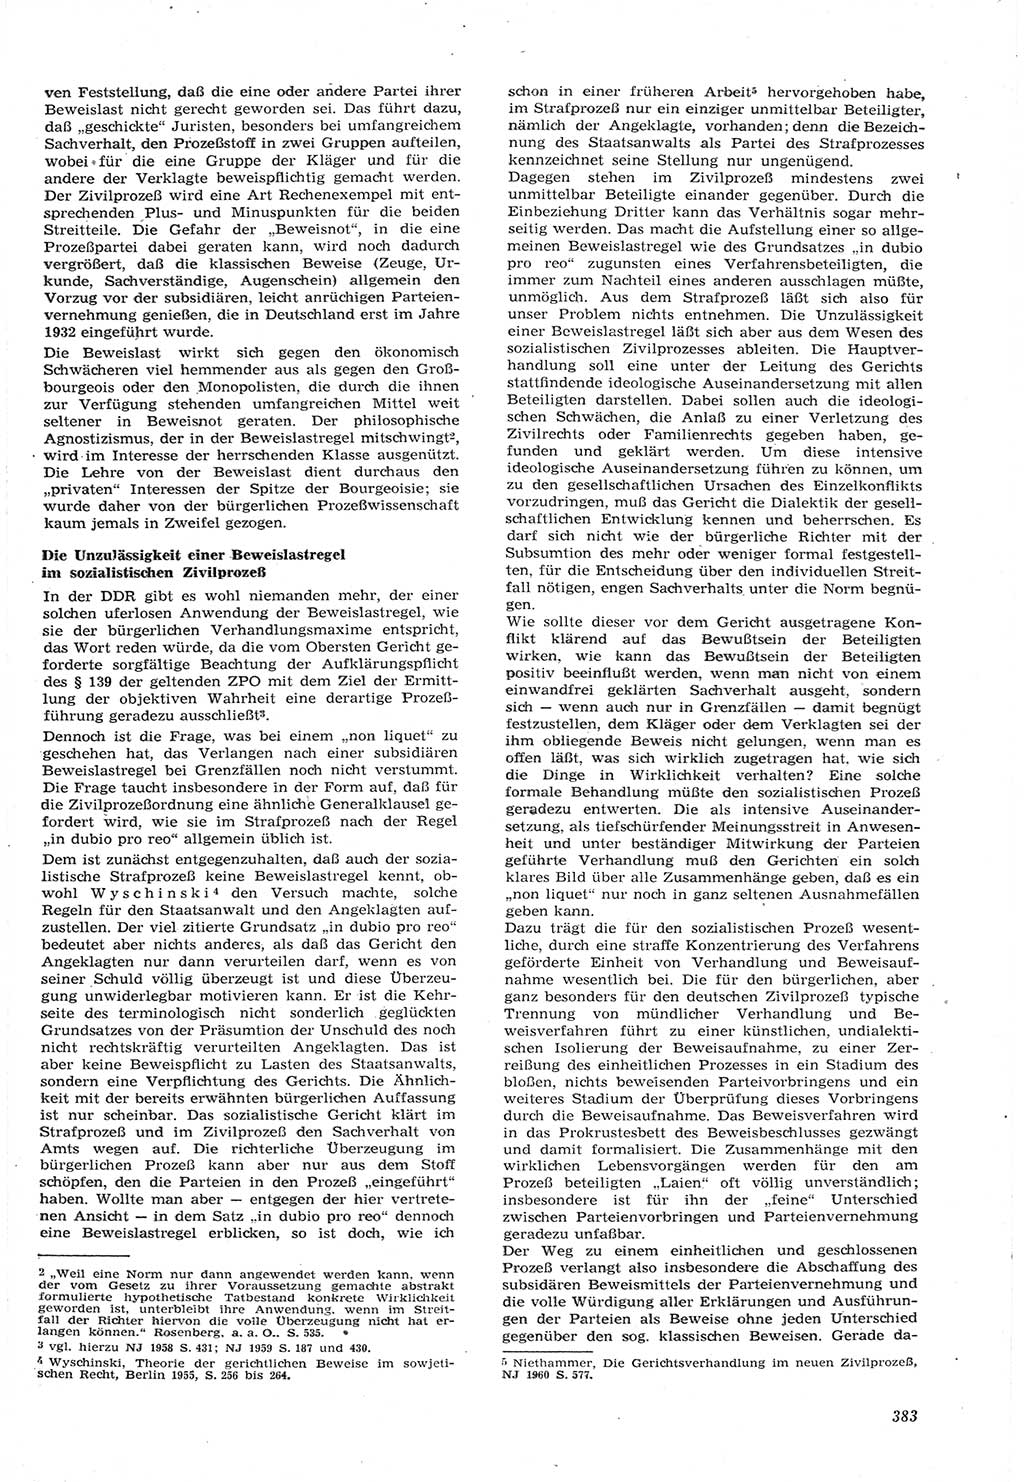 Neue Justiz (NJ), Zeitschrift für Recht und Rechtswissenschaft [Deutsche Demokratische Republik (DDR)], 15. Jahrgang 1961, Seite 383 (NJ DDR 1961, S. 383)